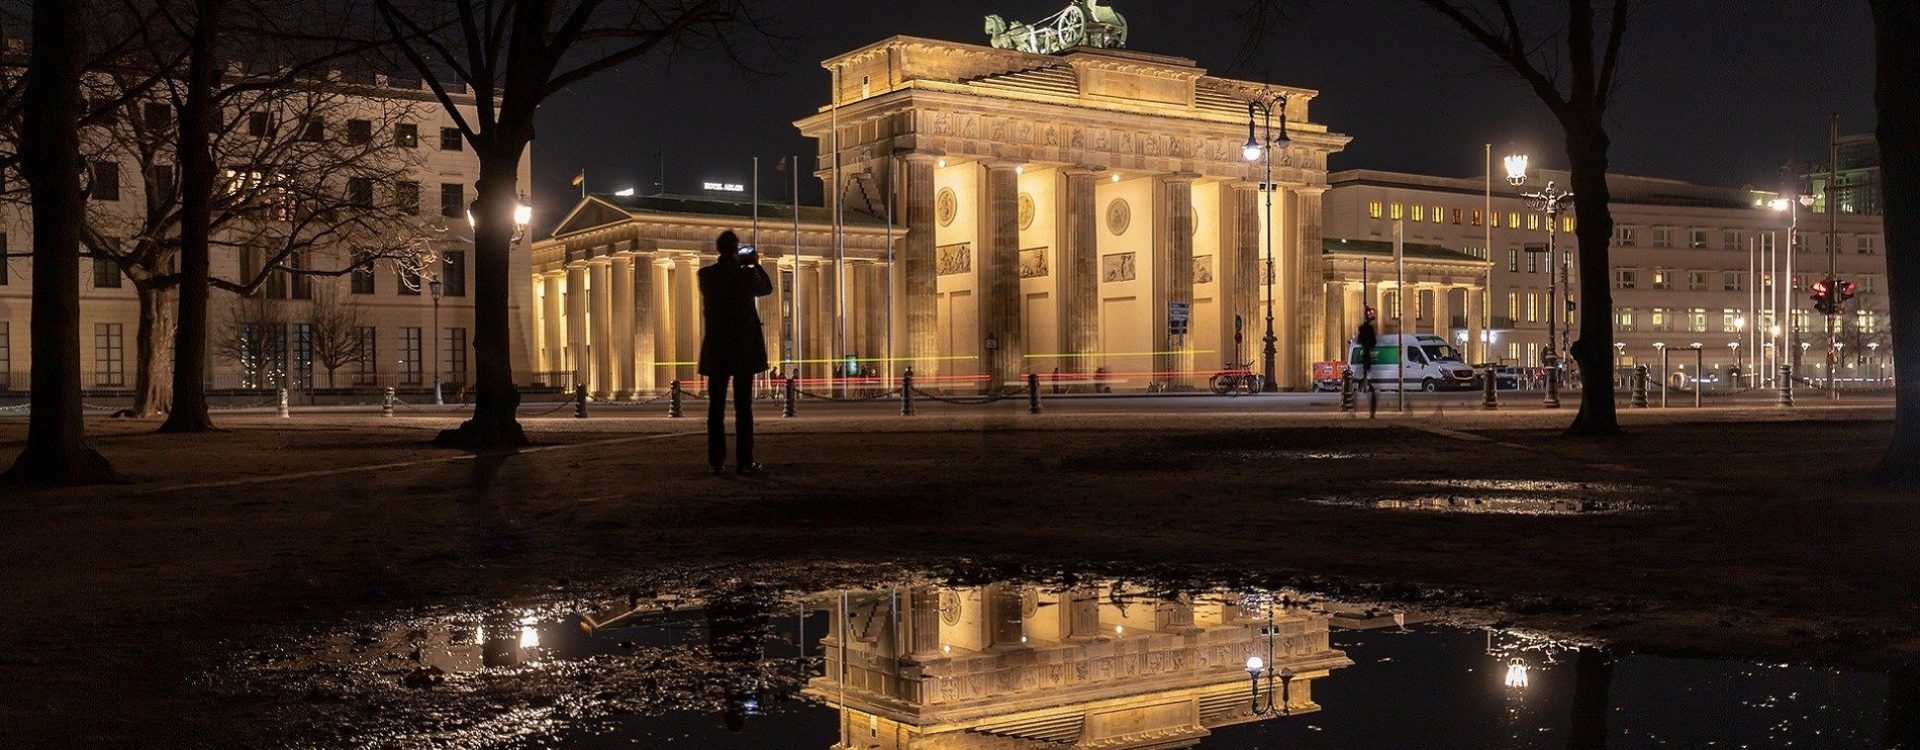 Putovanje u Berlin putovanje je u vodeći grad umejtosti, političkih zbivanja, mode i mnogih drugih.